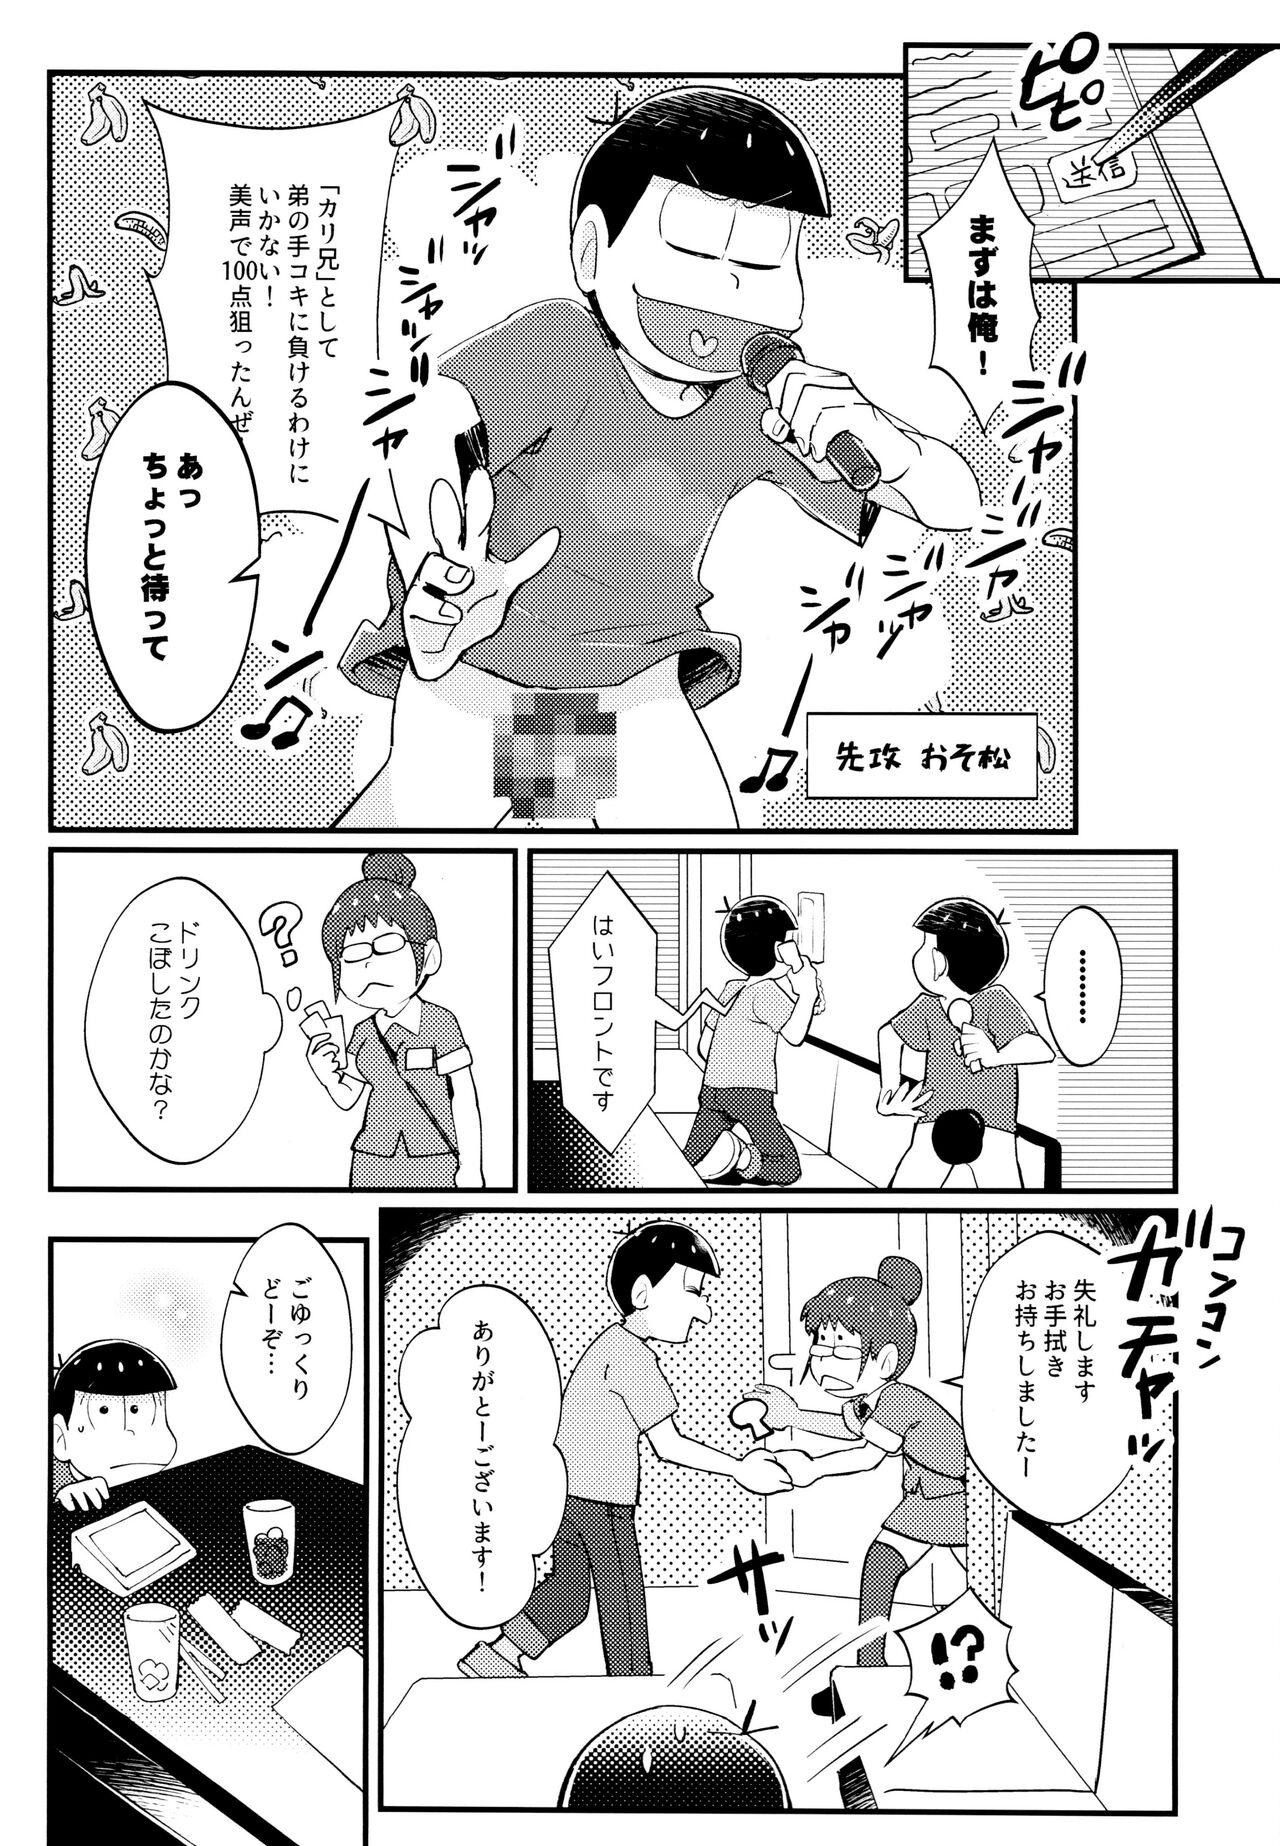 Forwomen Manatsu no!! Shikoshikokaraoke dai batoru!! - Osomatsu san Crossdresser - Page 8